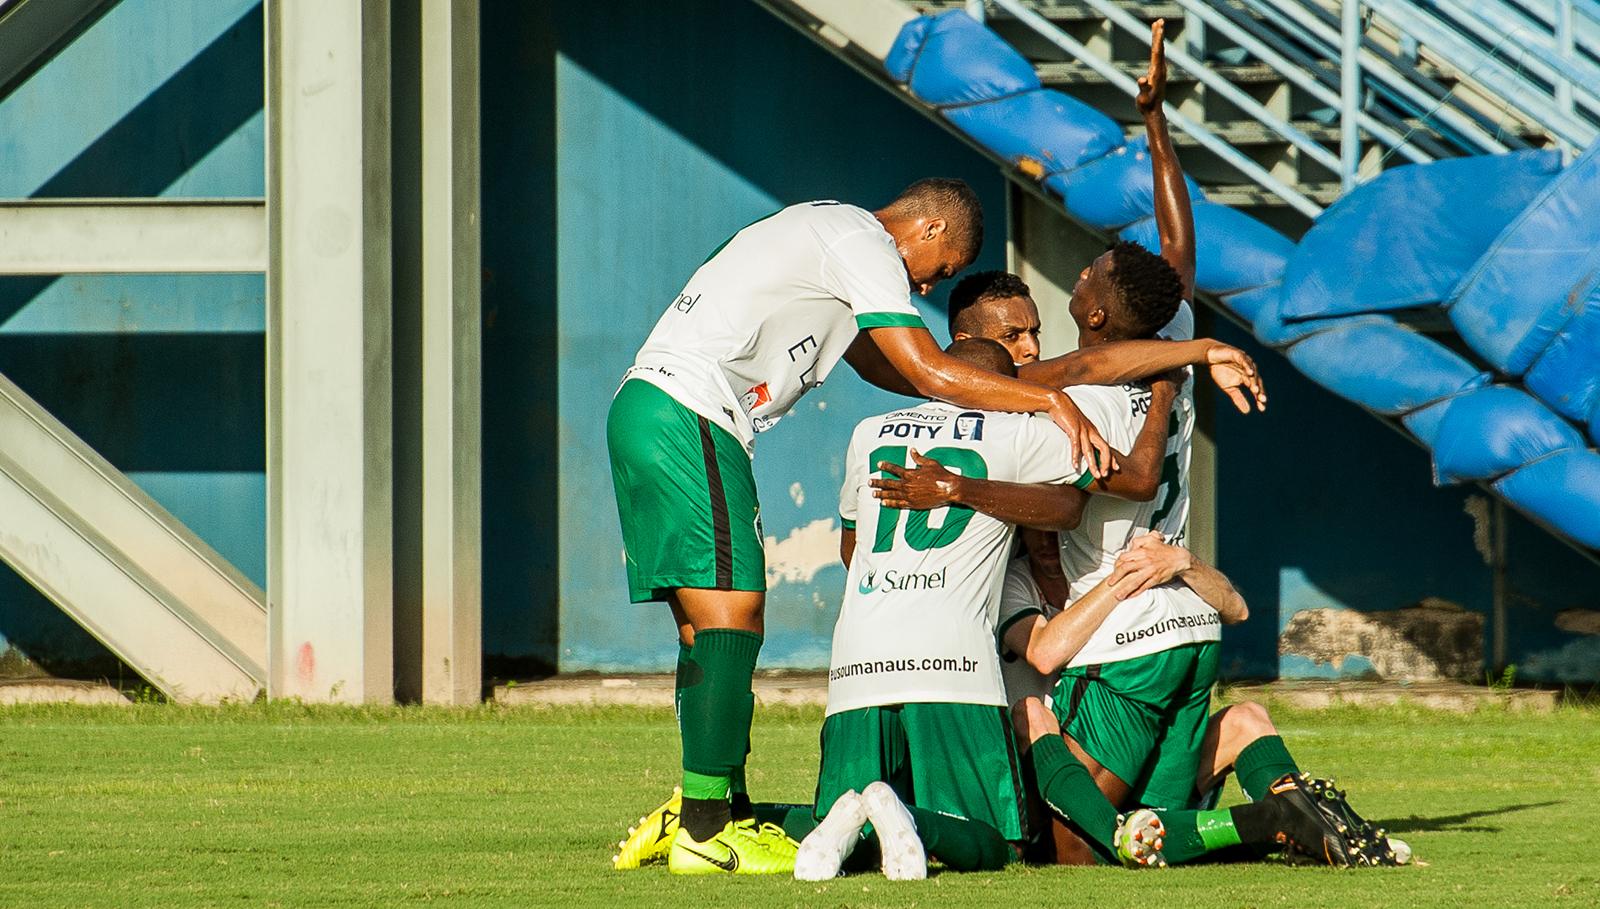 Manaus FC protocola emenda ao mandado de garantia solicitada pelo TJD-AM